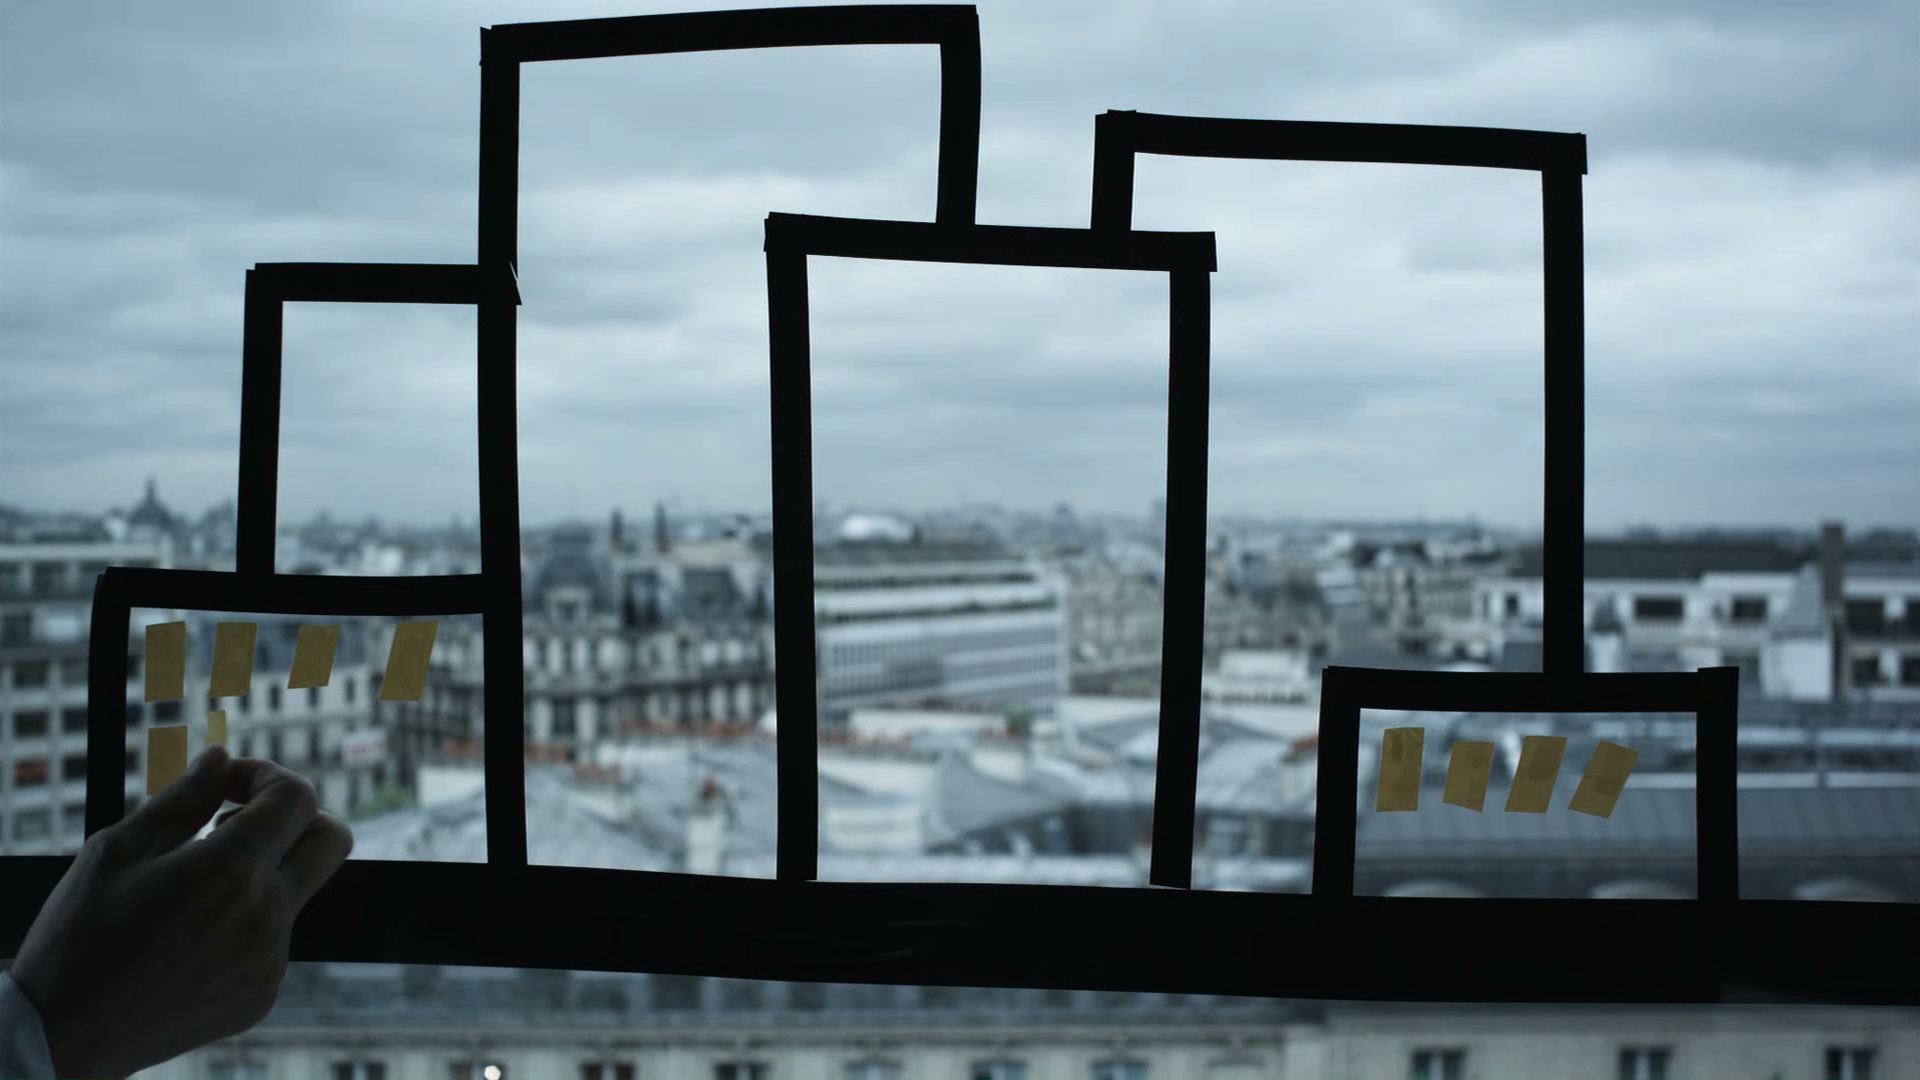 la boite carrée projette le court-métrage Une ville une utopie réalisée à Nantes